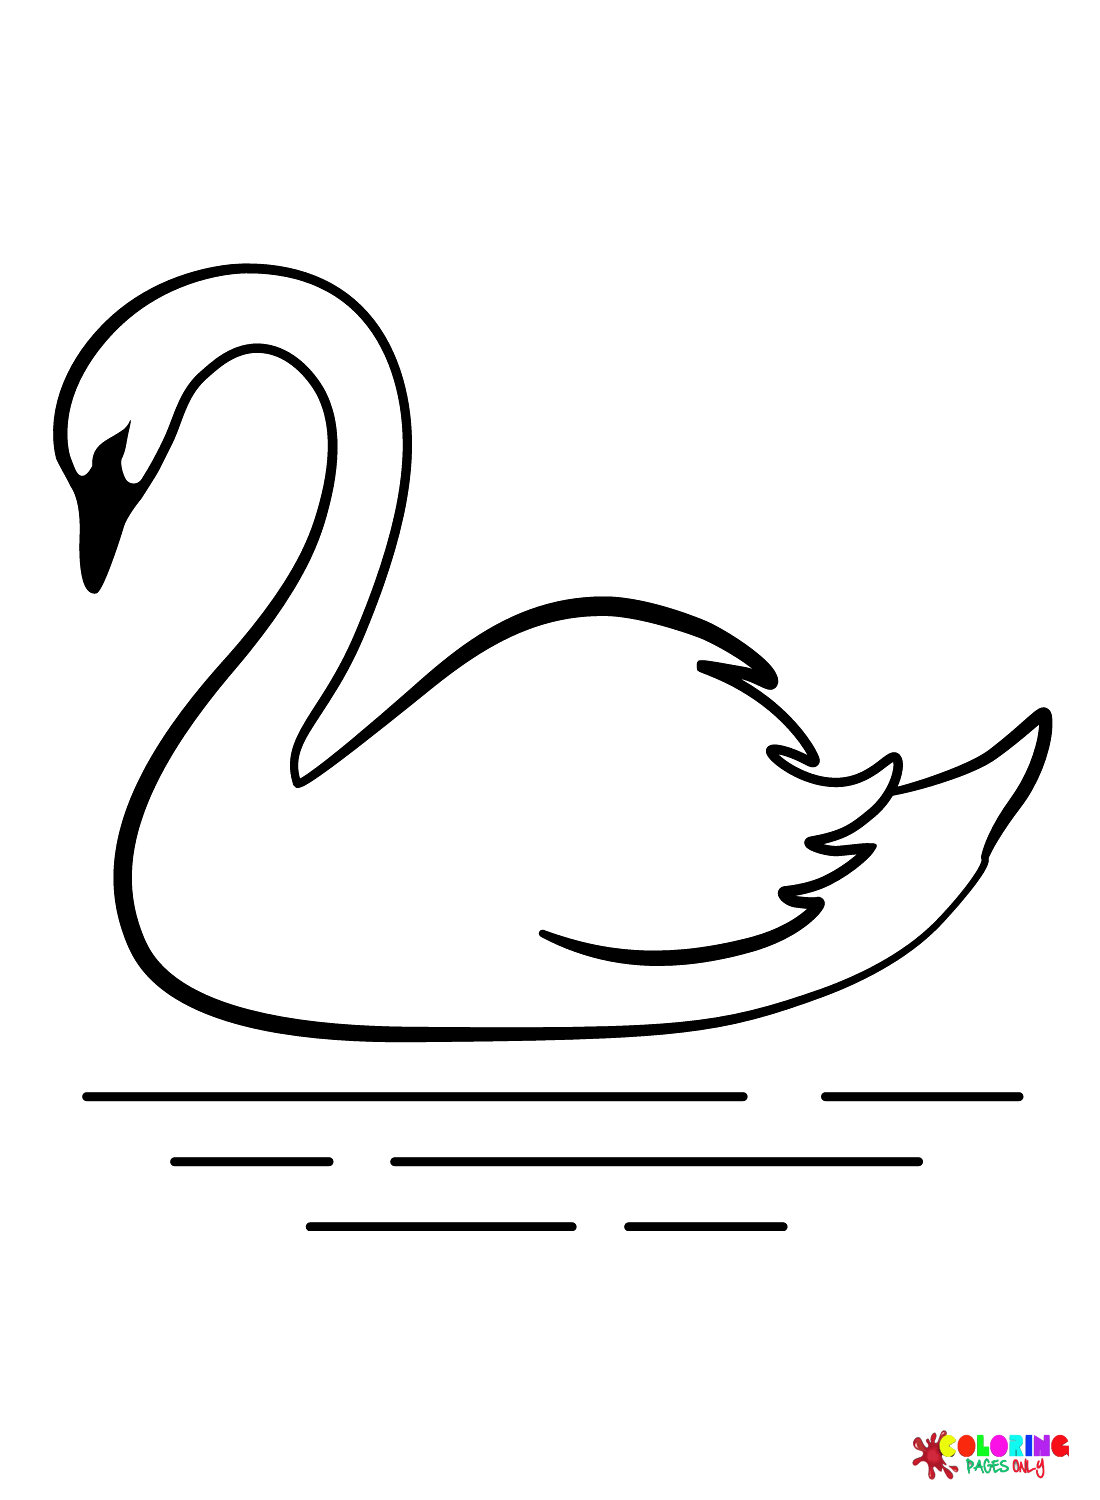 Распечатанный Лебедь из Лебедя